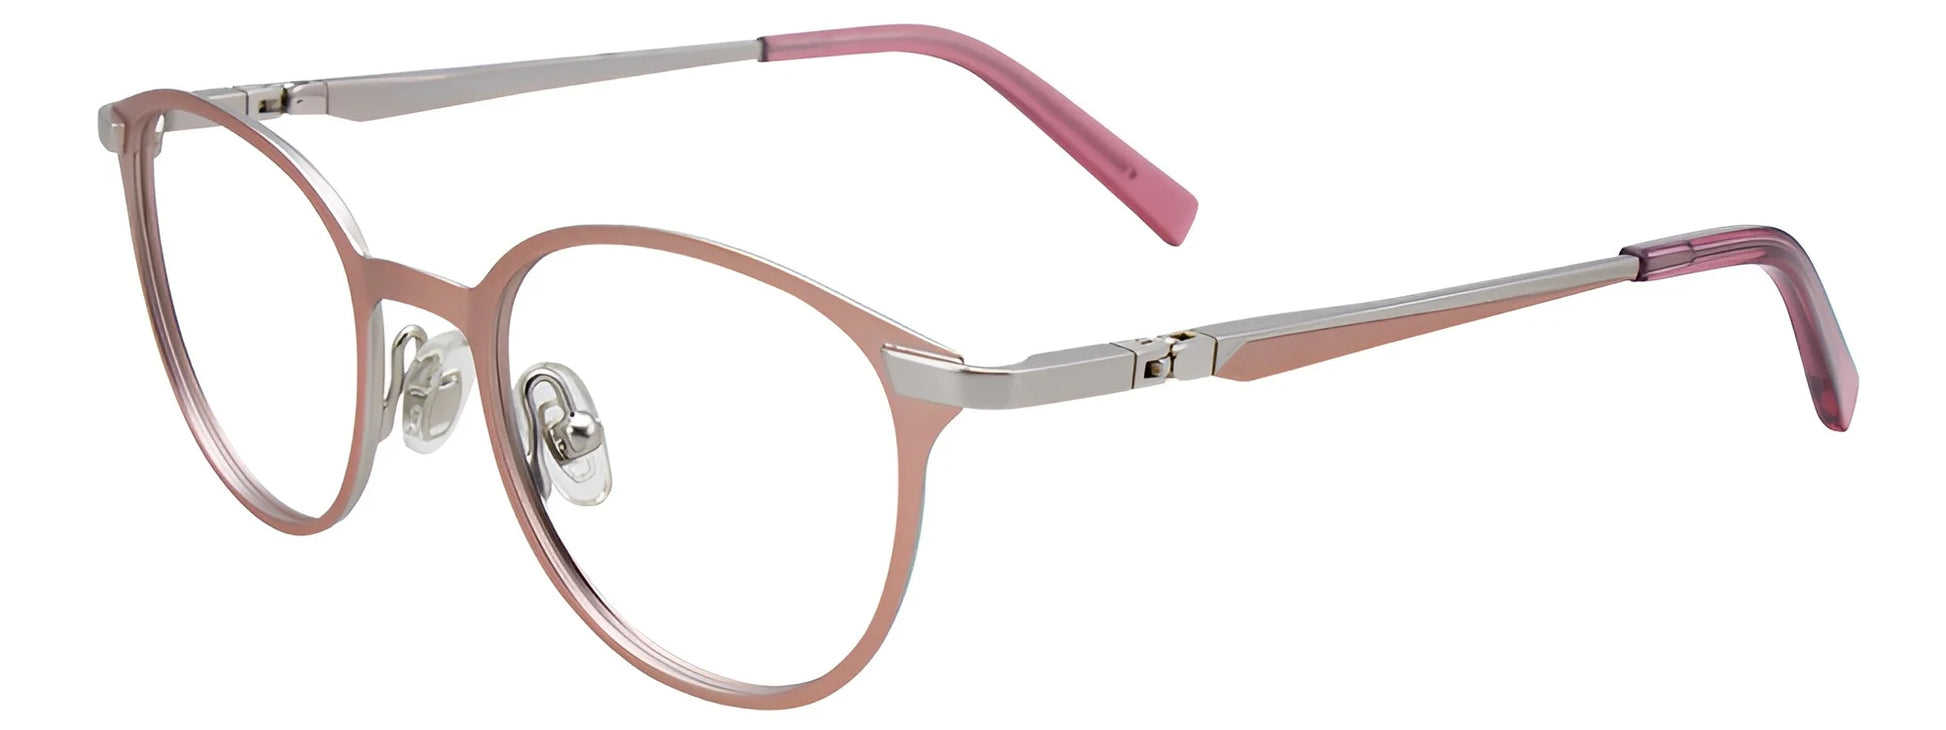 EasyClip EC489 Eyeglasses Matt Light Pink & Matt Silver